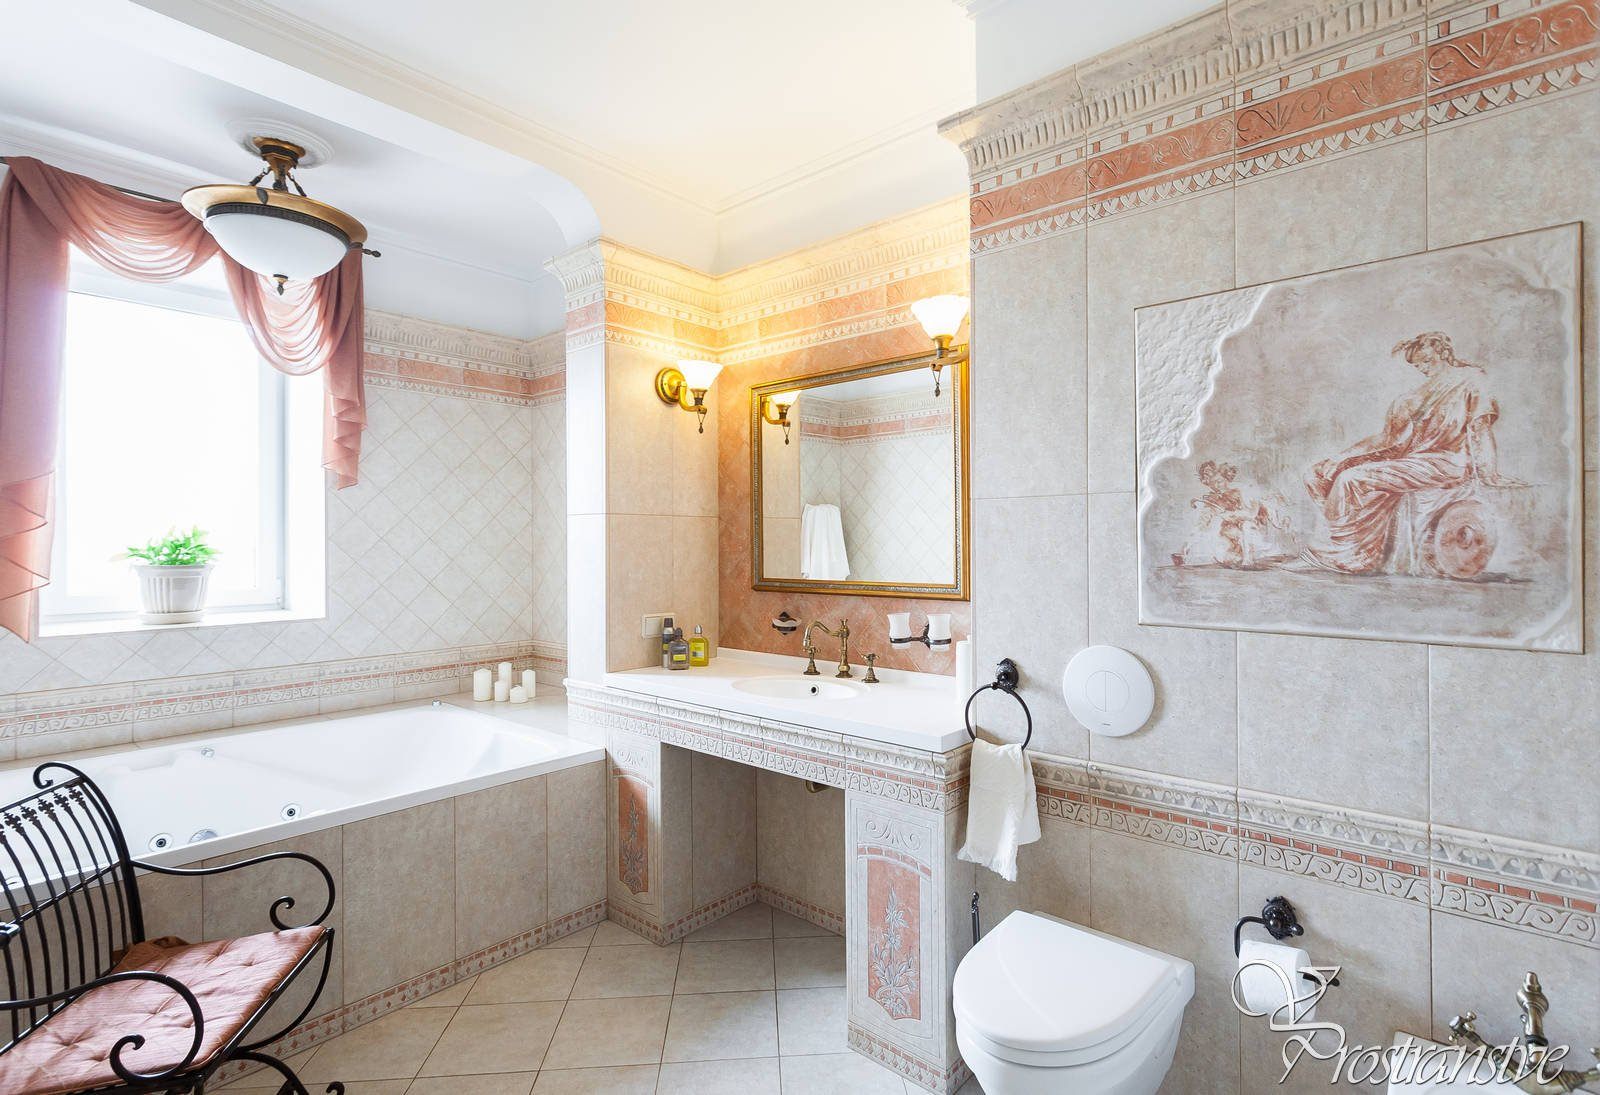 Ванная в итальянском стиле. Ванная в греческом стиле. Итальянский стиль в ванной комнате. Средиземноморский итальянский стиль в интерьере ванная комната.